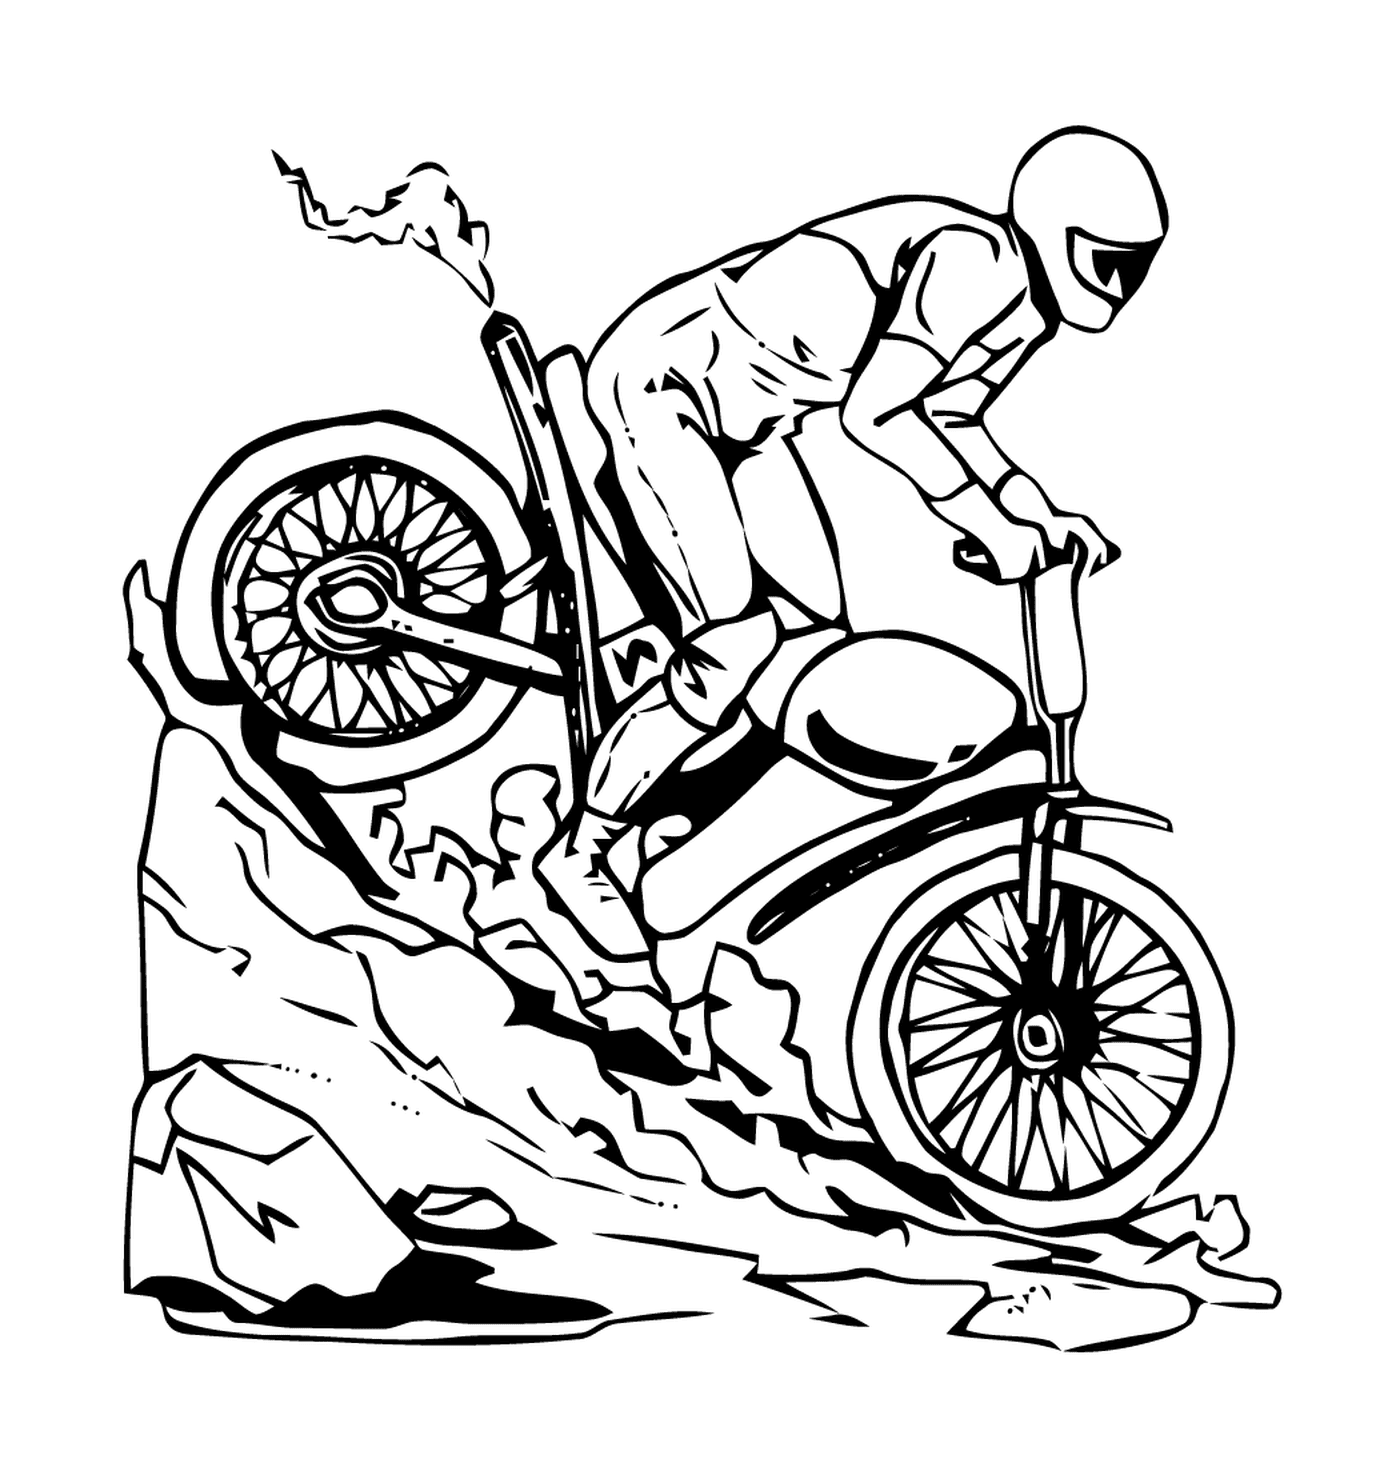   Homme en vélo descendant une colline 